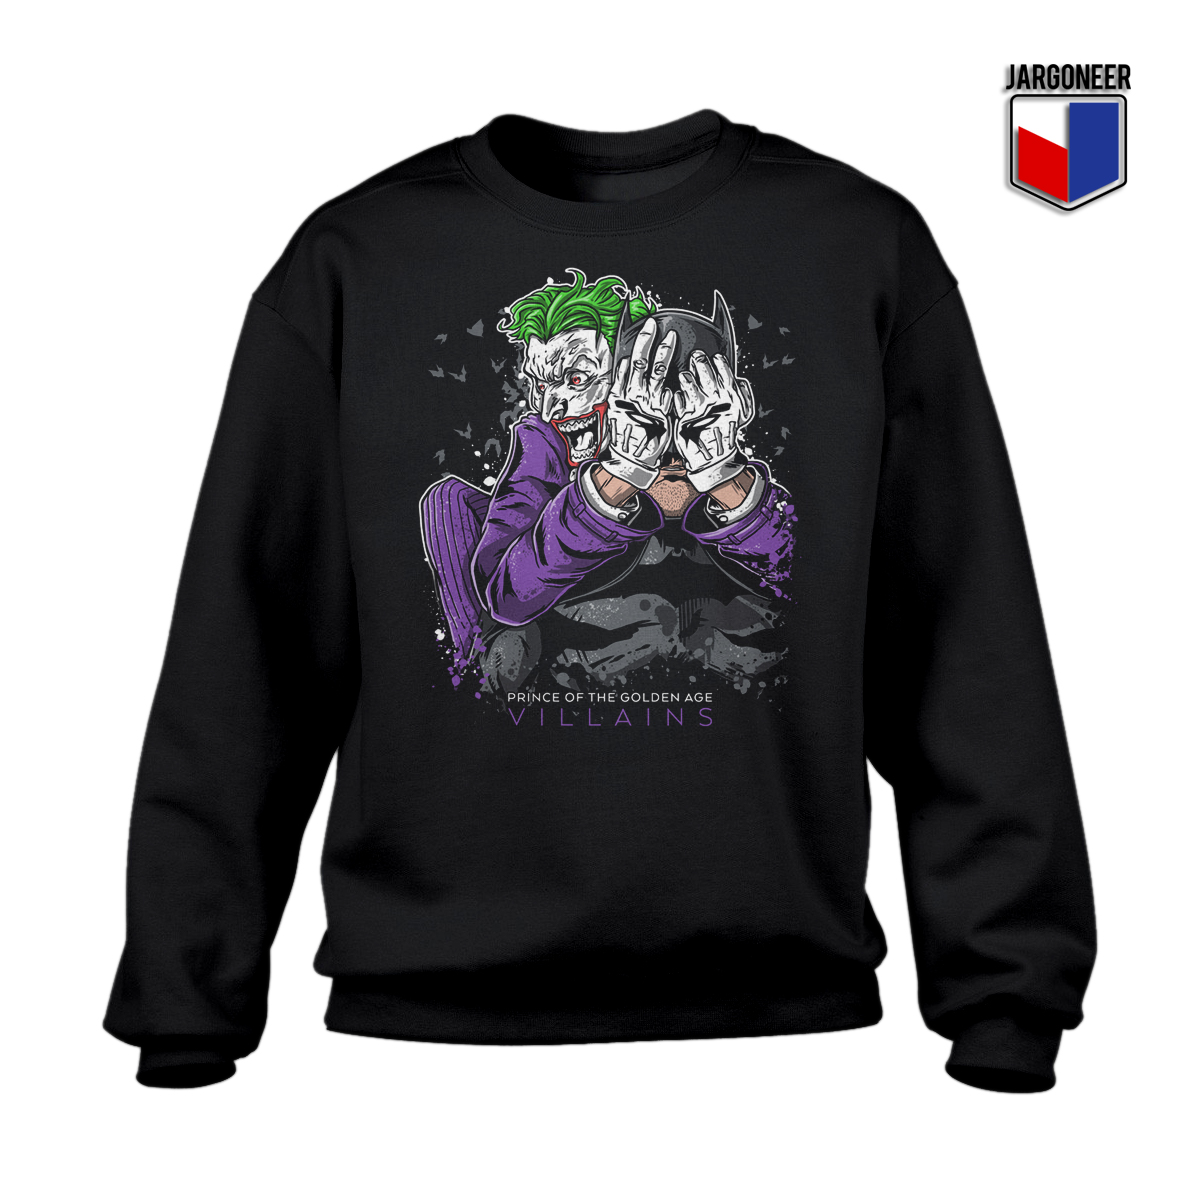 Cool The Bat Joker Unisex Sweatshirt Design - Shop Unique Graphic Cool Shirt Designs